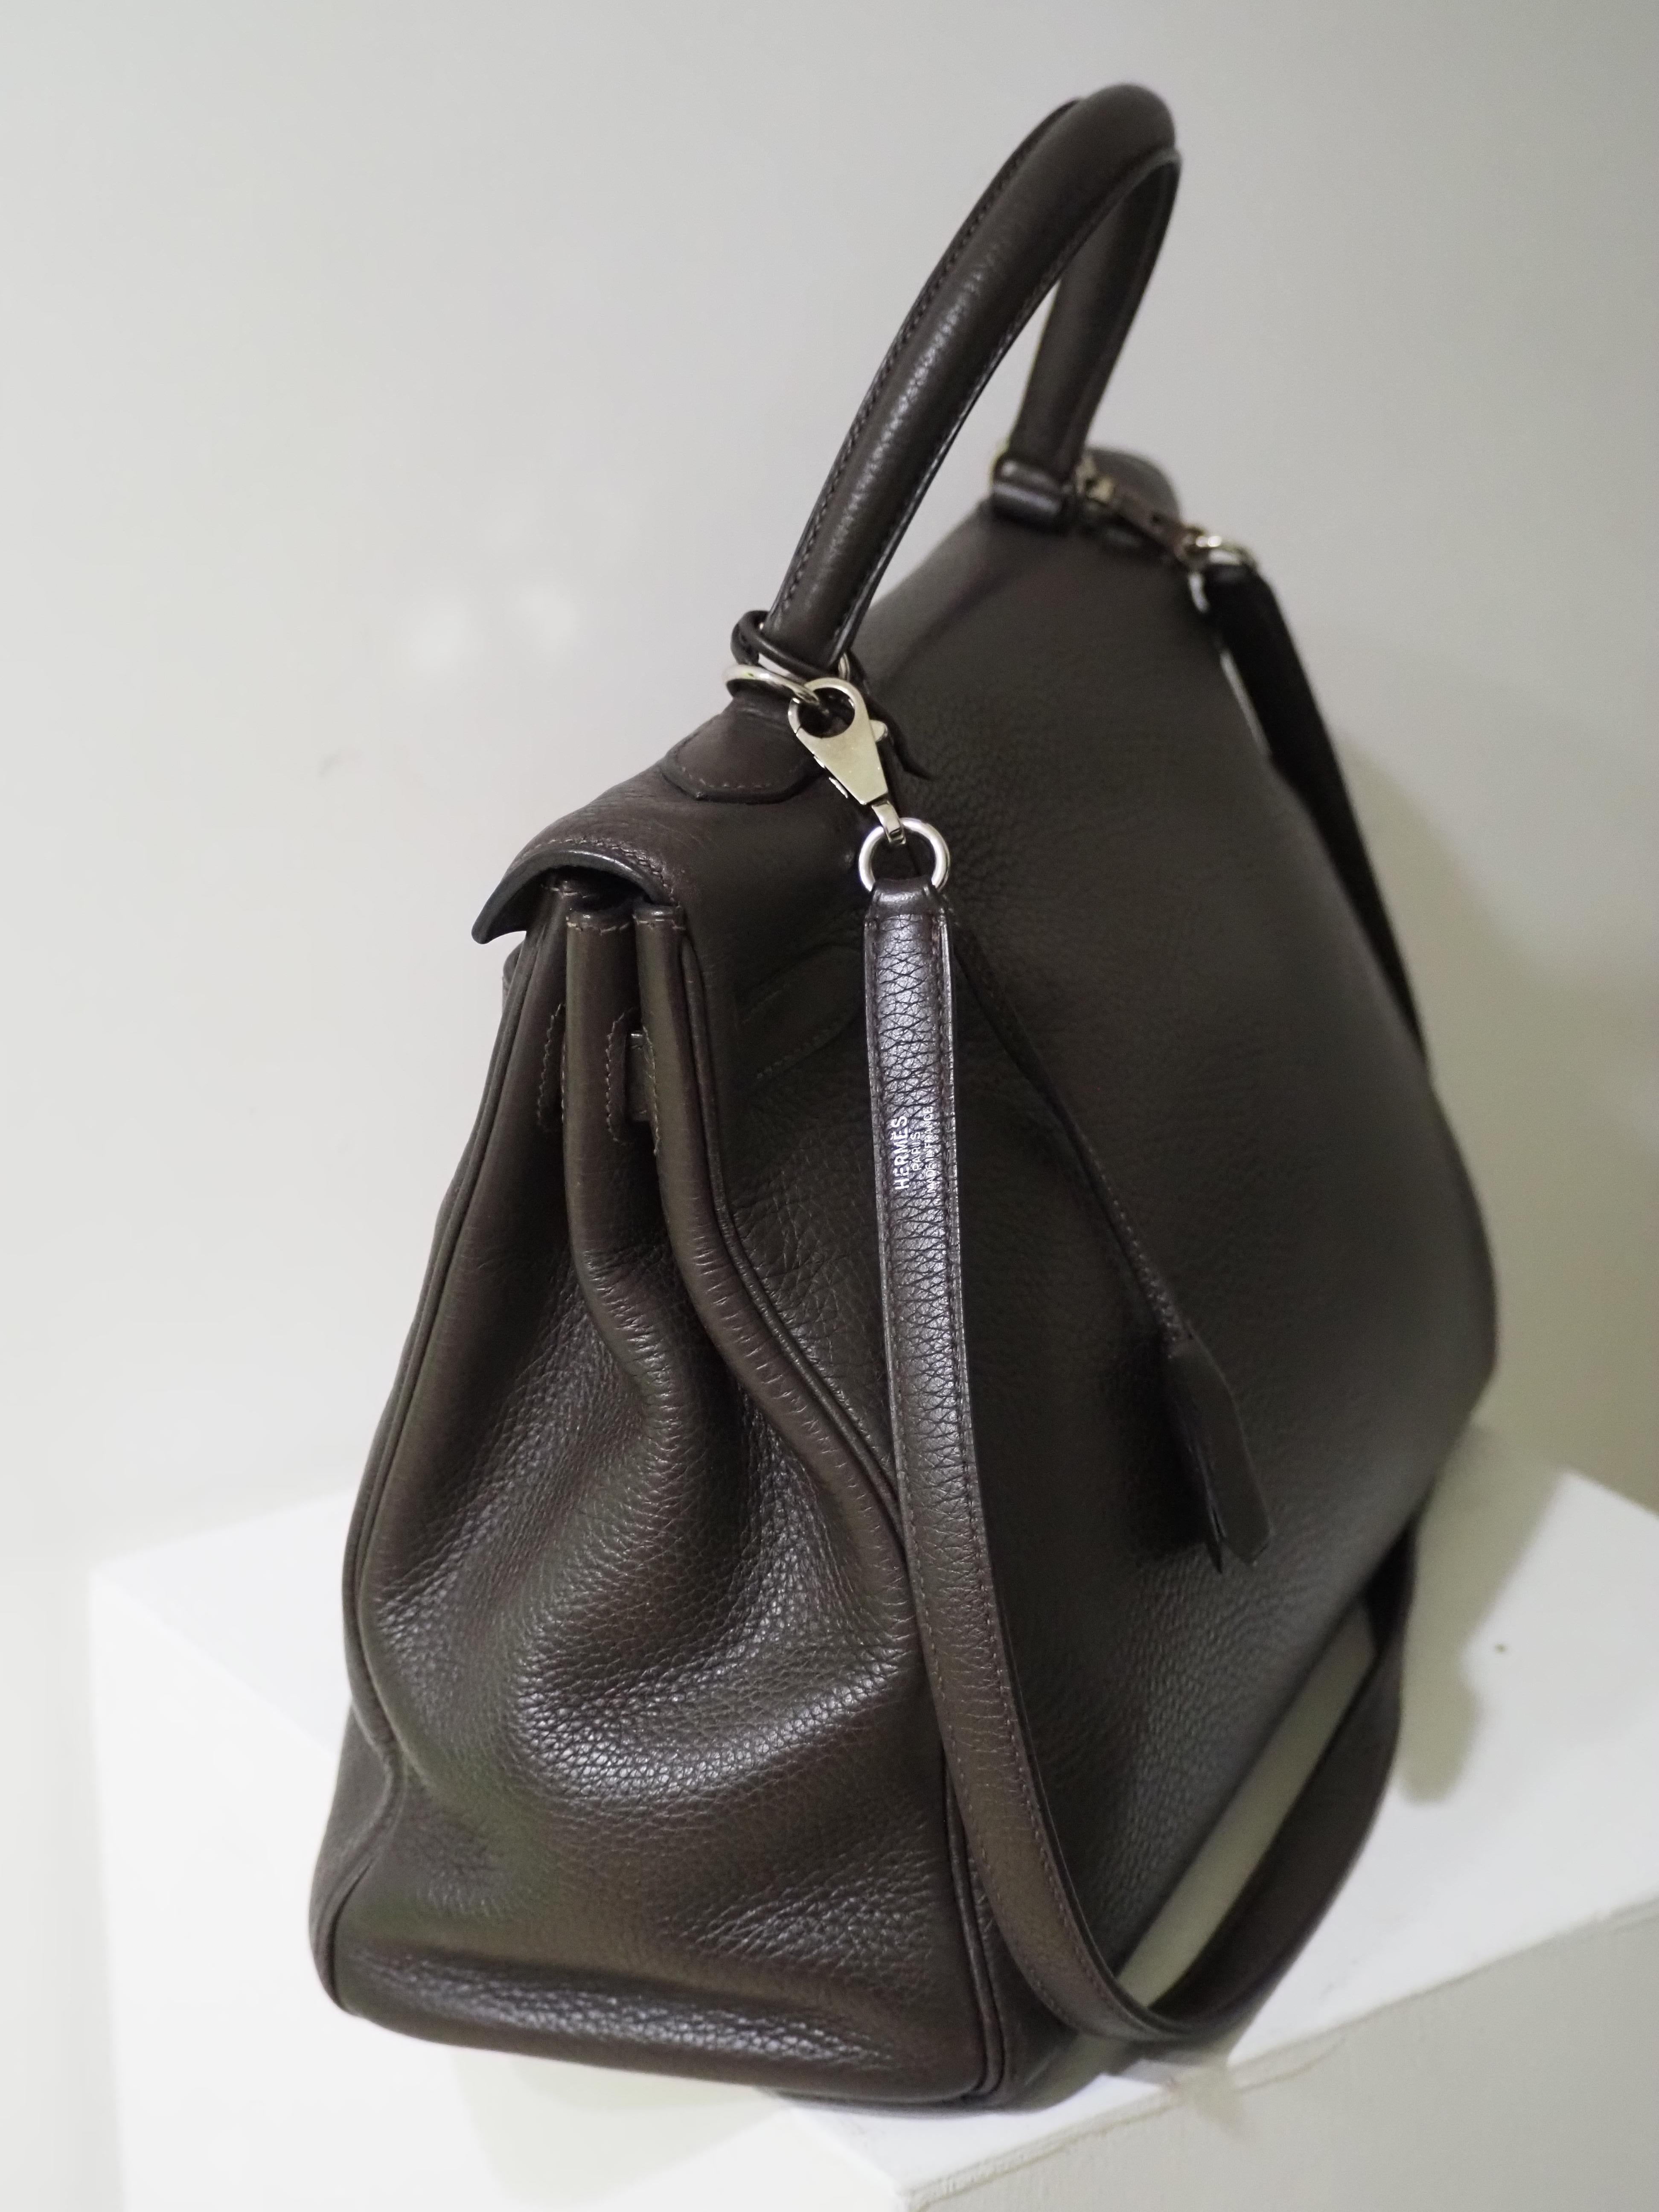 Hermès 35 Brown leather handpainted handbag shoulder bag 5